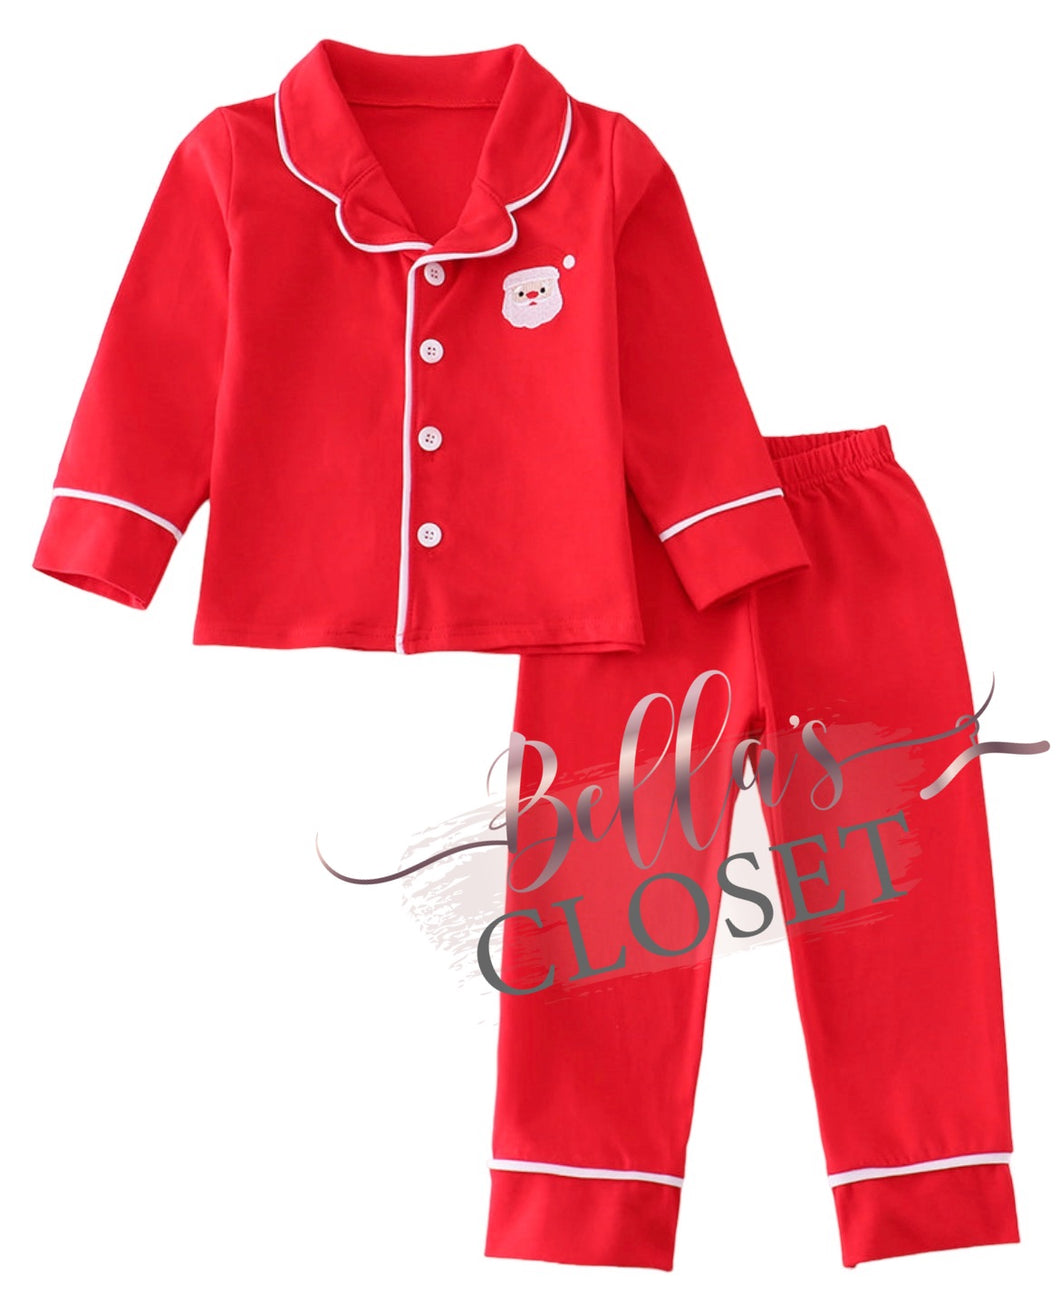 Boys Premium Red Santa Claus Embroidery Pajamas